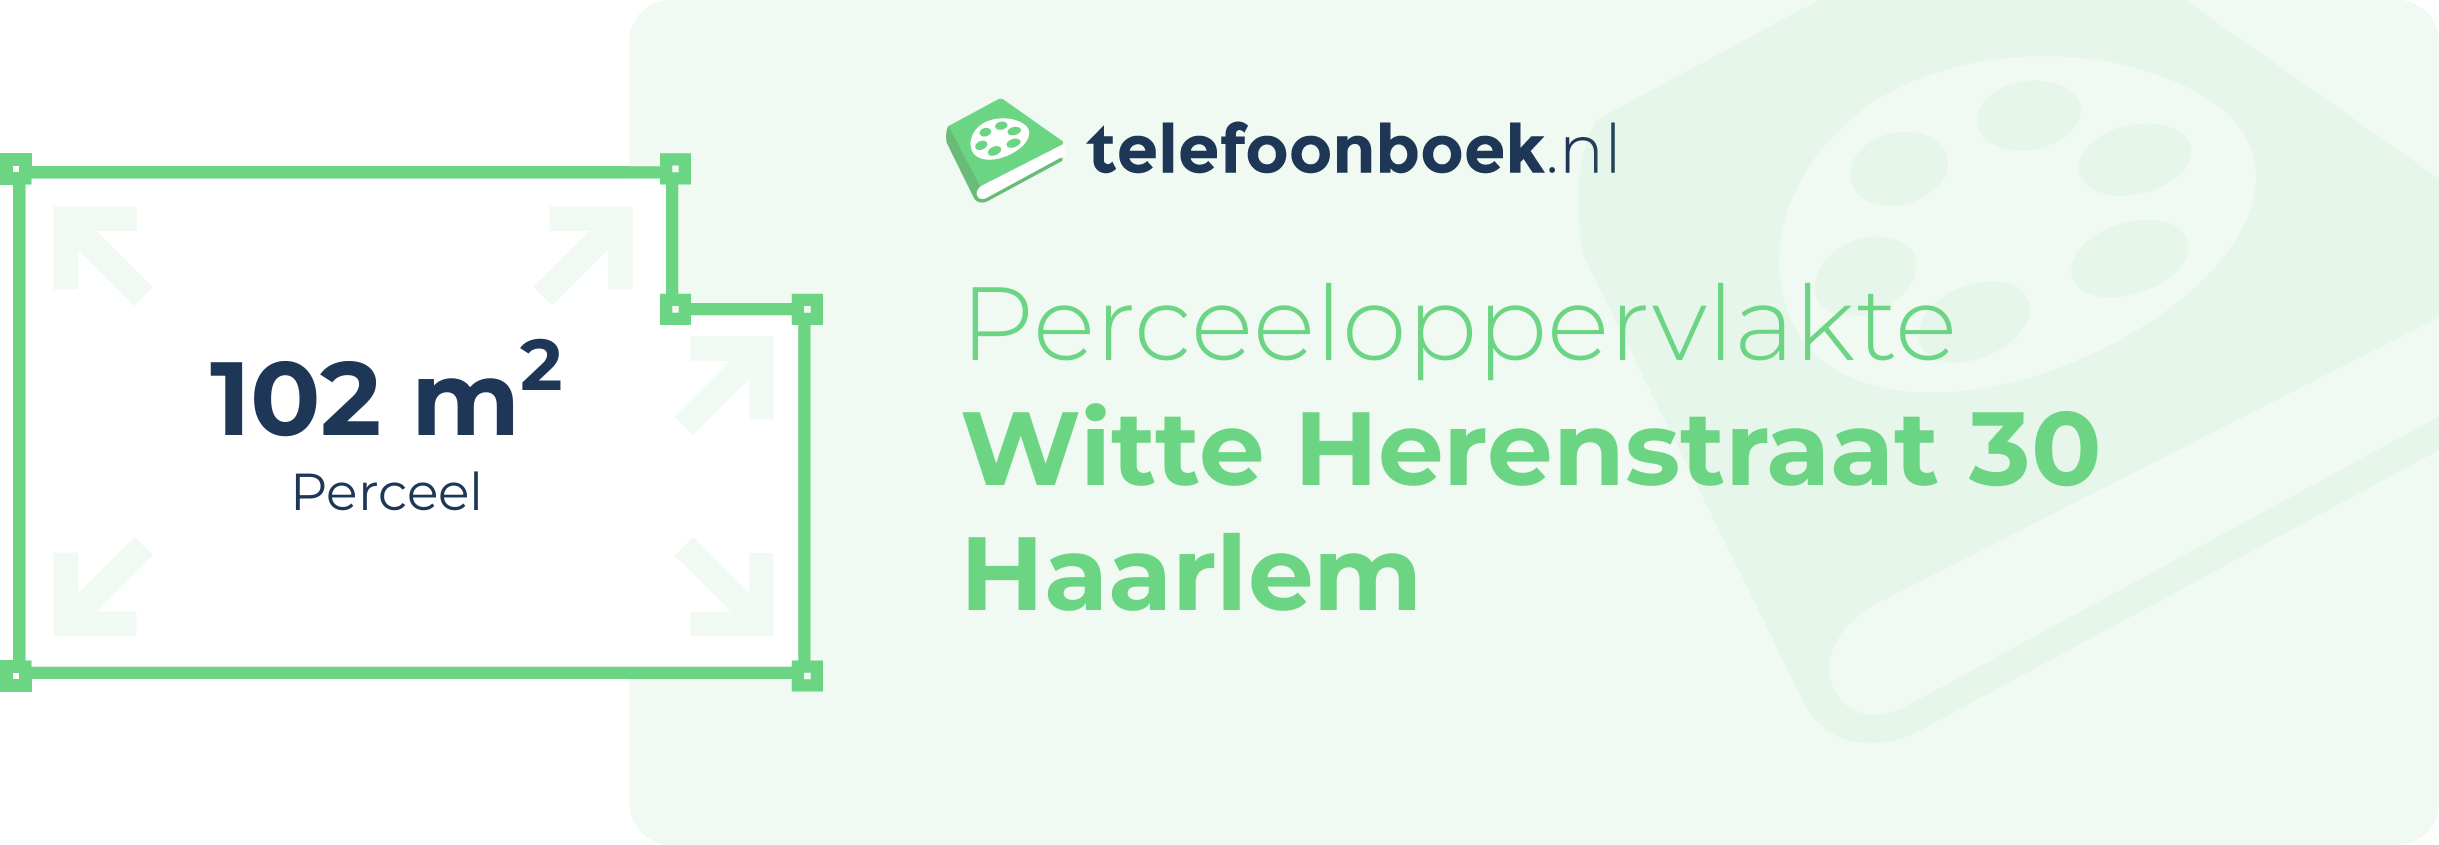 Perceeloppervlakte Witte Herenstraat 30 Haarlem